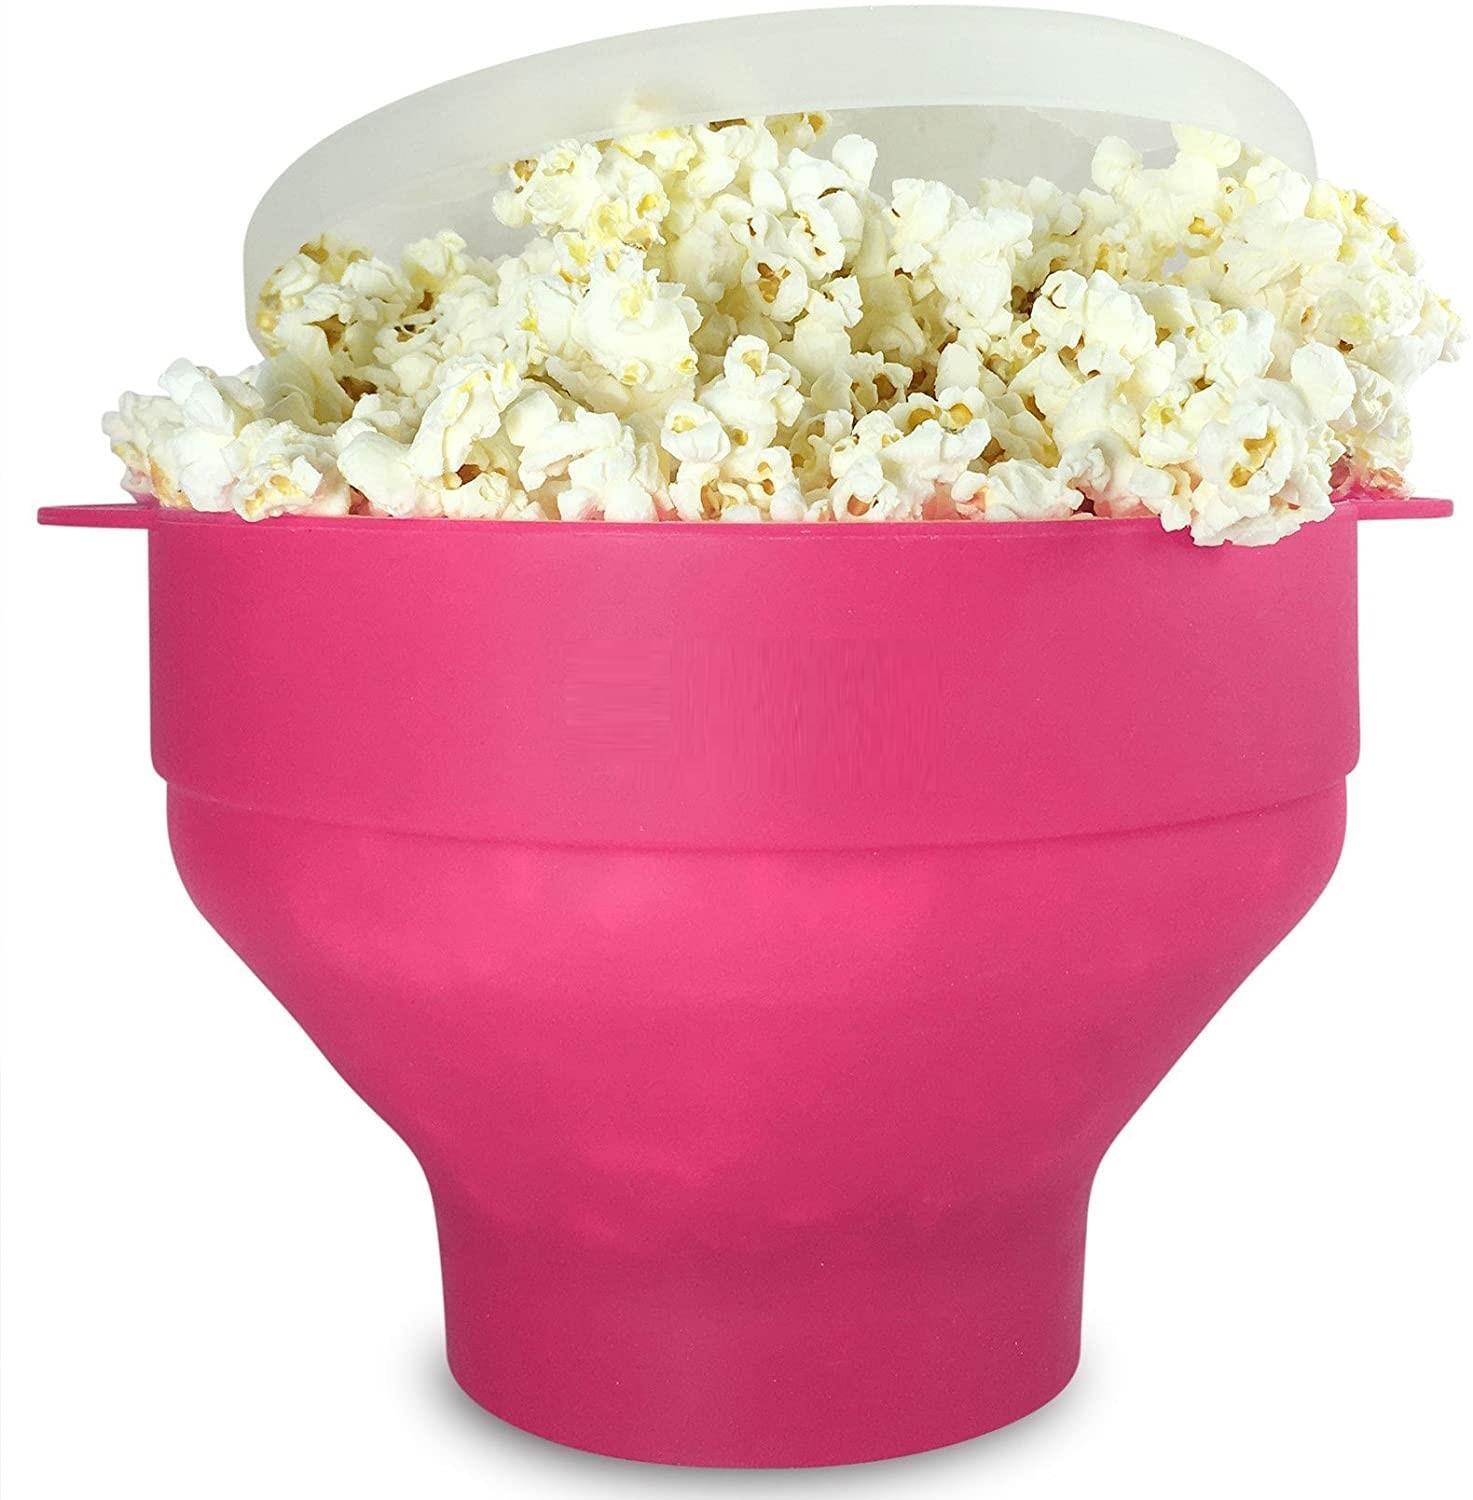 Popcorn kulho silikoni taitto vaaleanpunainen - Gigantti verkkokauppa